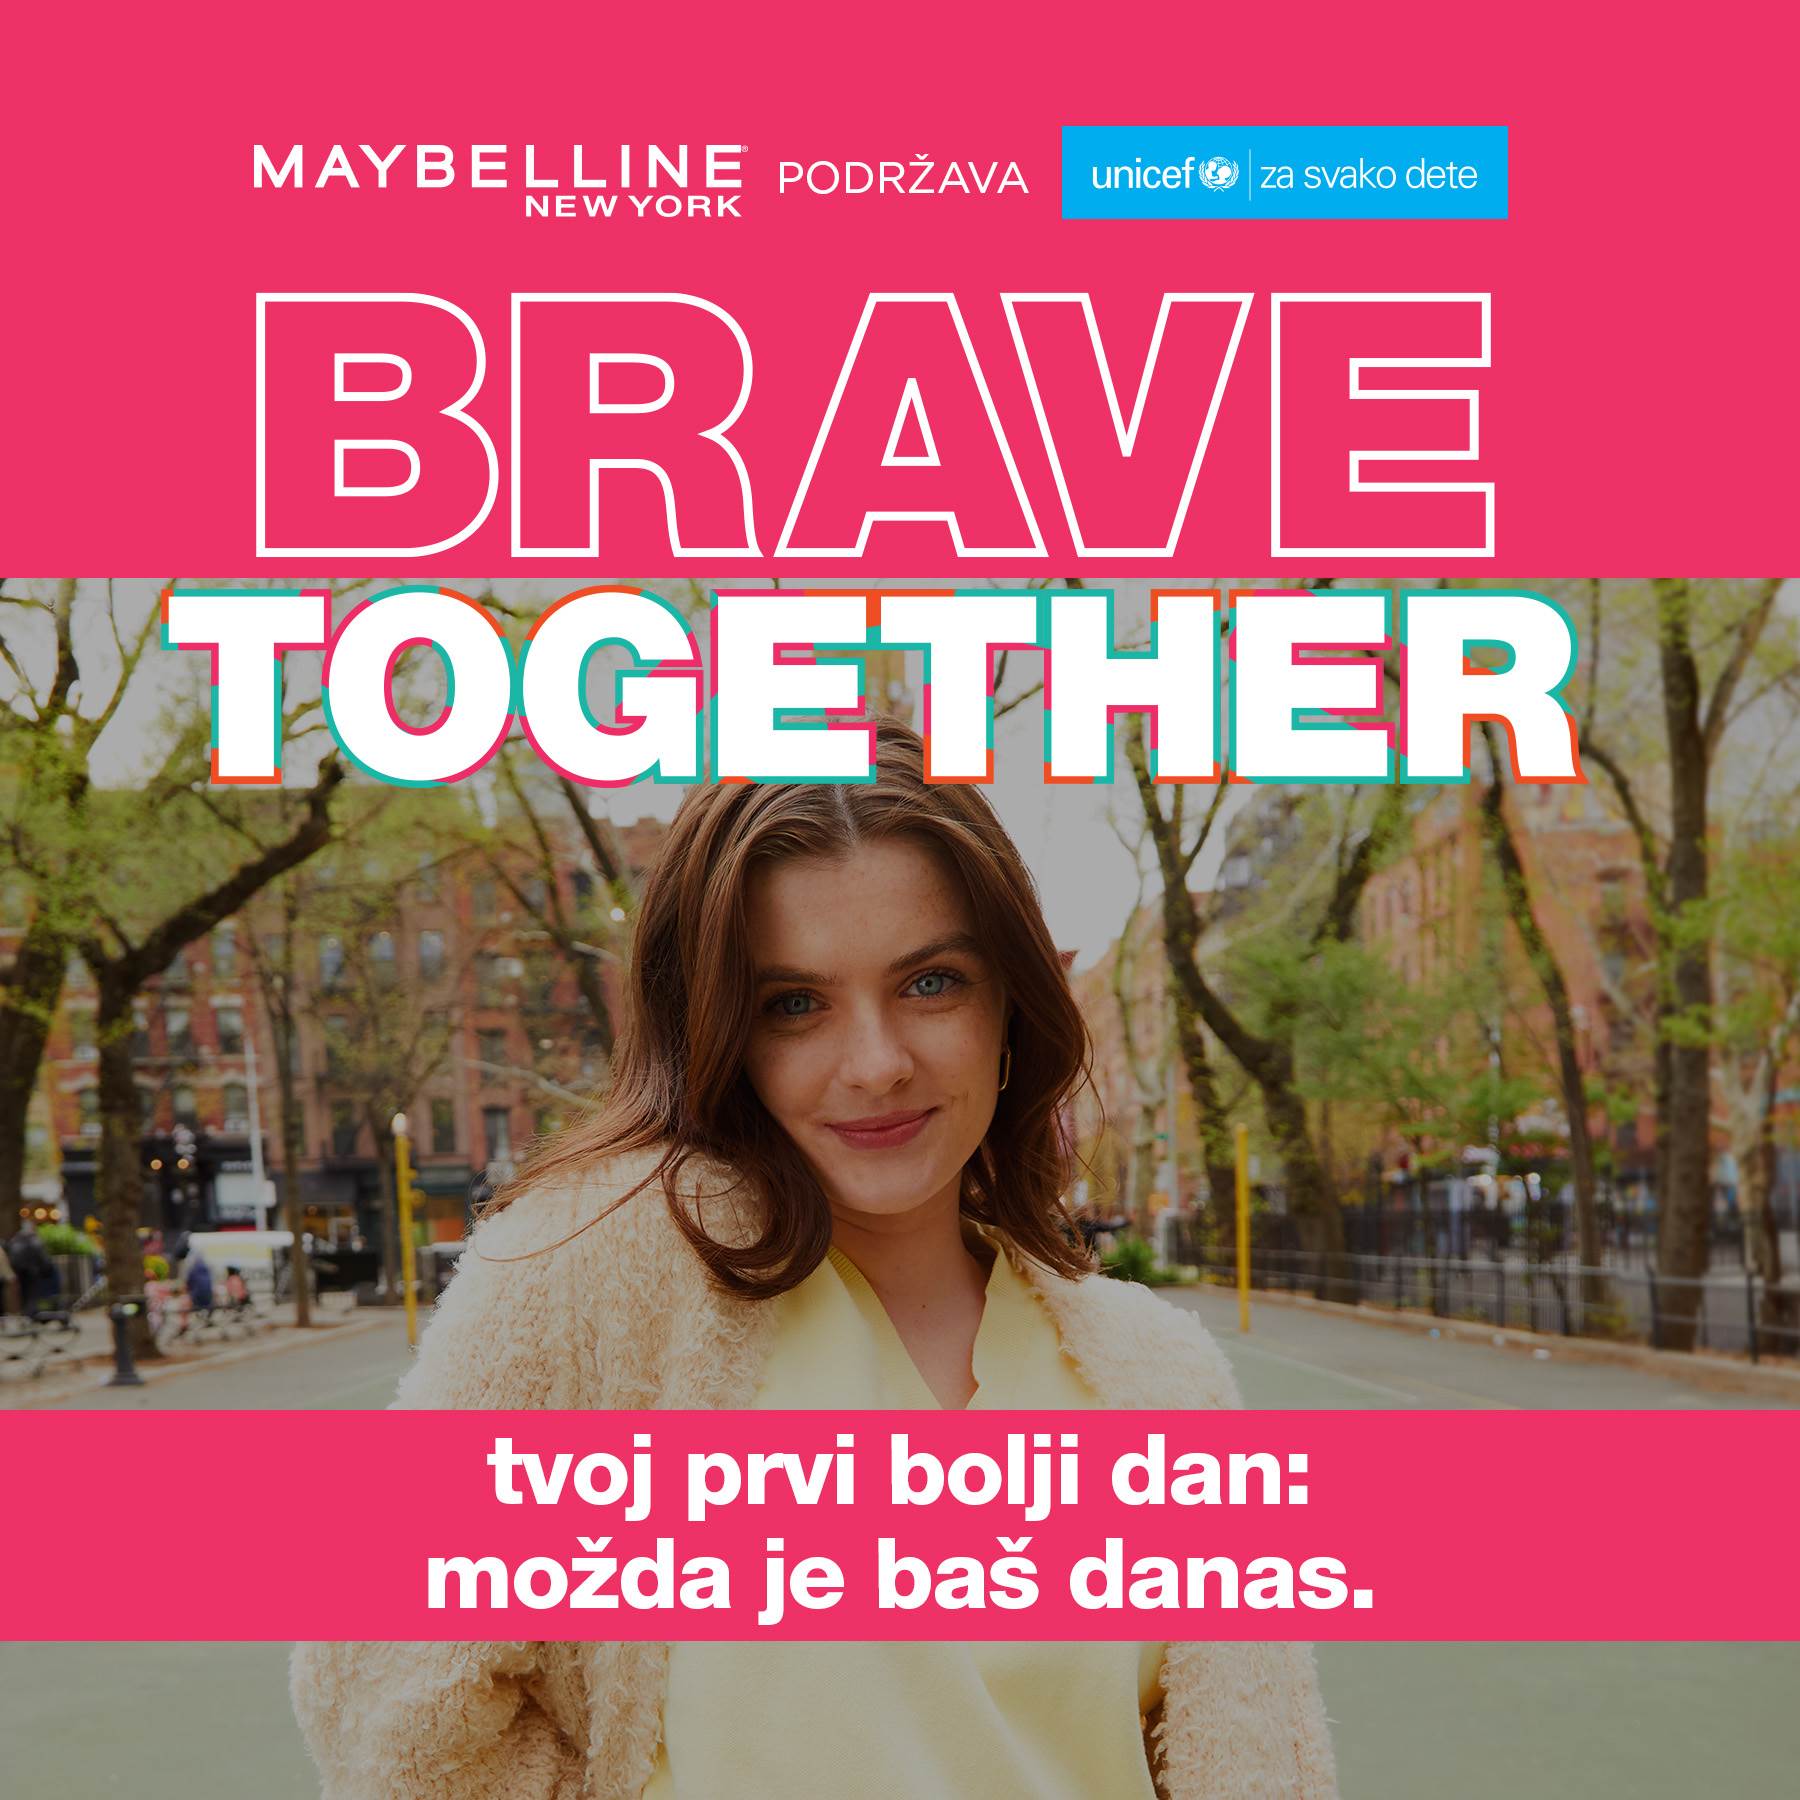  Brave Together_vizual_fotografija1.jpg 